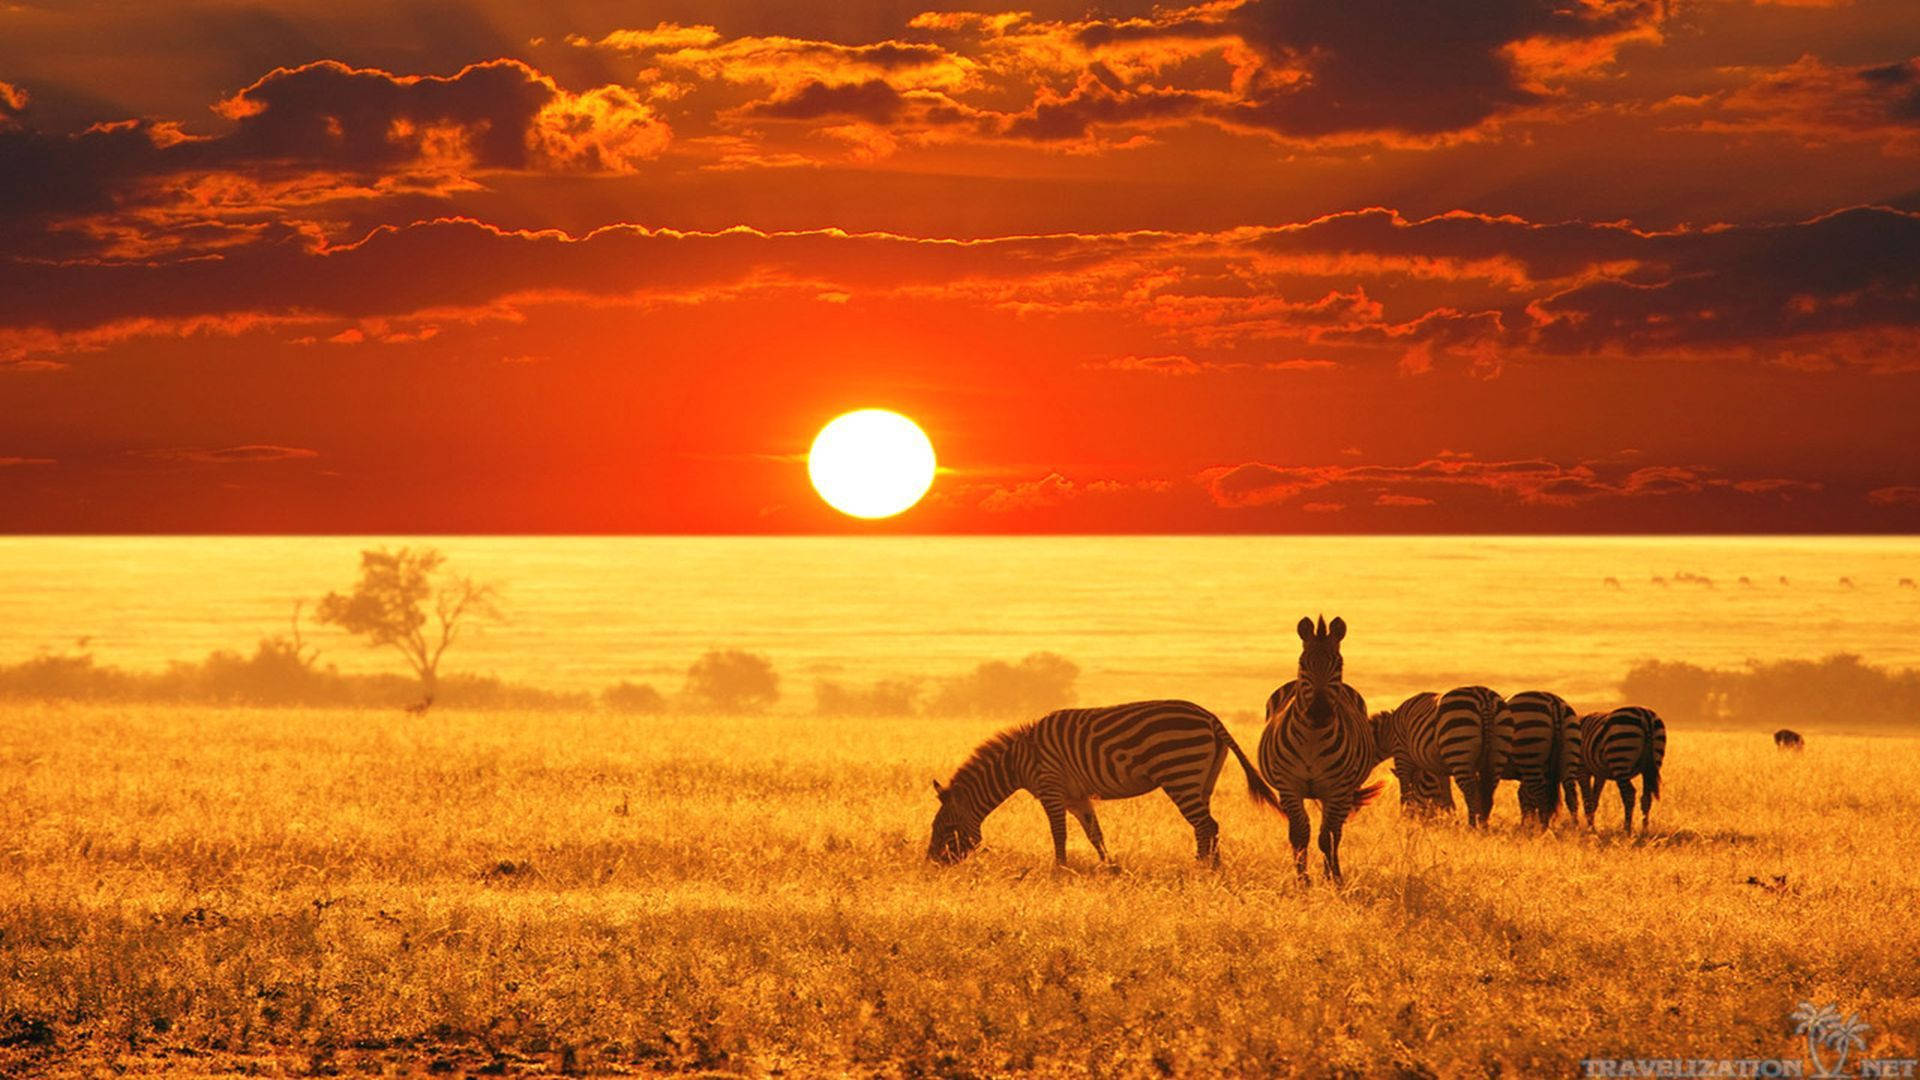 Kenya Zebras In Sunset Wallpaper